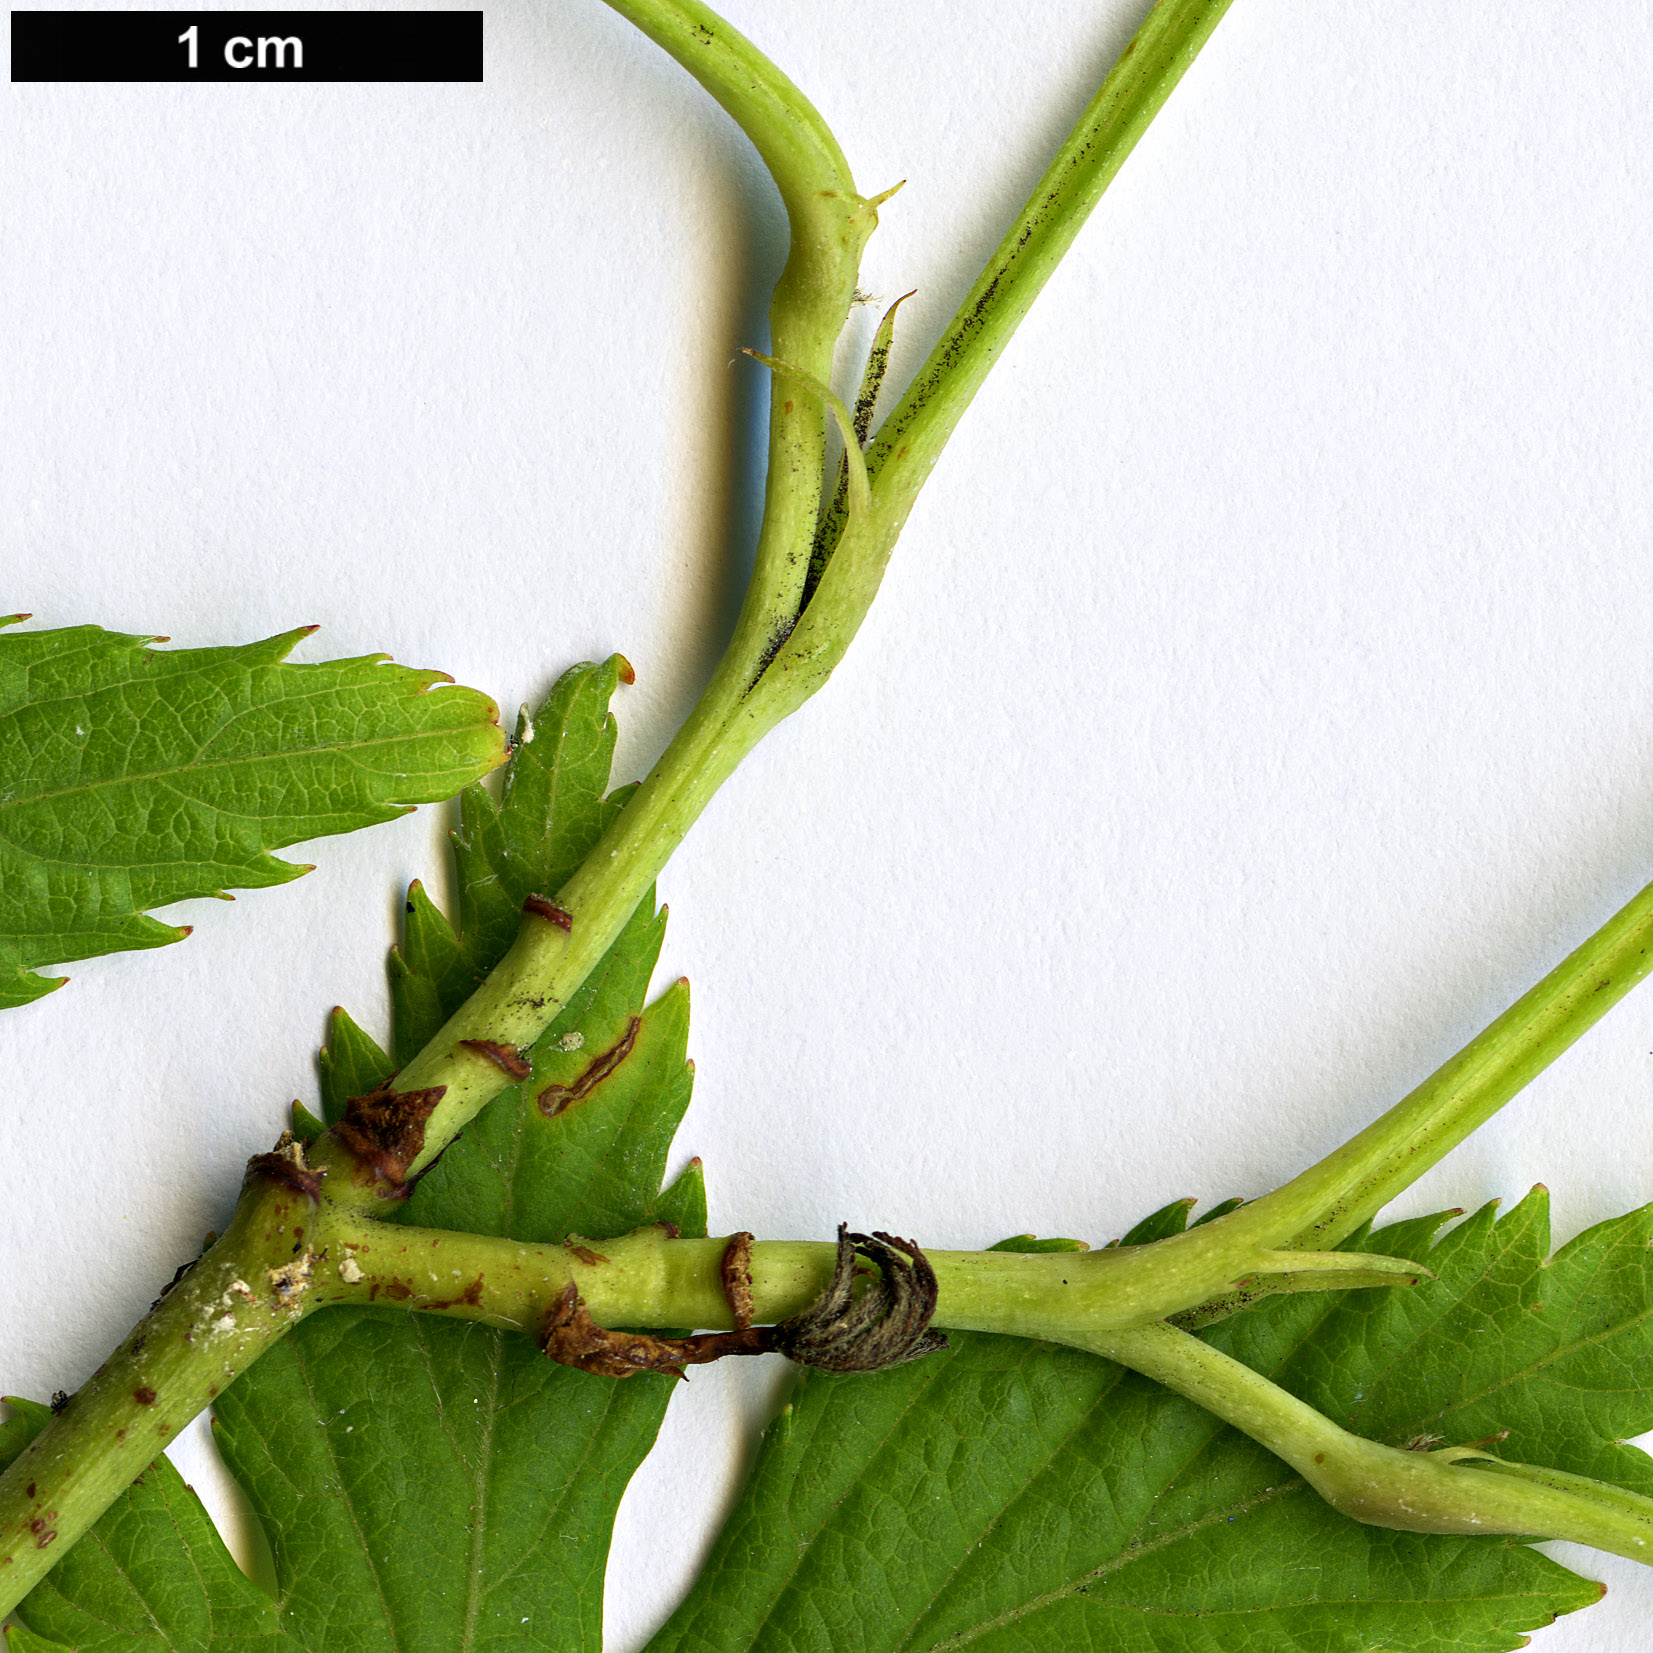 High resolution image: Family: Rosaceae - Genus: Rubus - Taxon: chingii - SpeciesSub: var. suavissimus